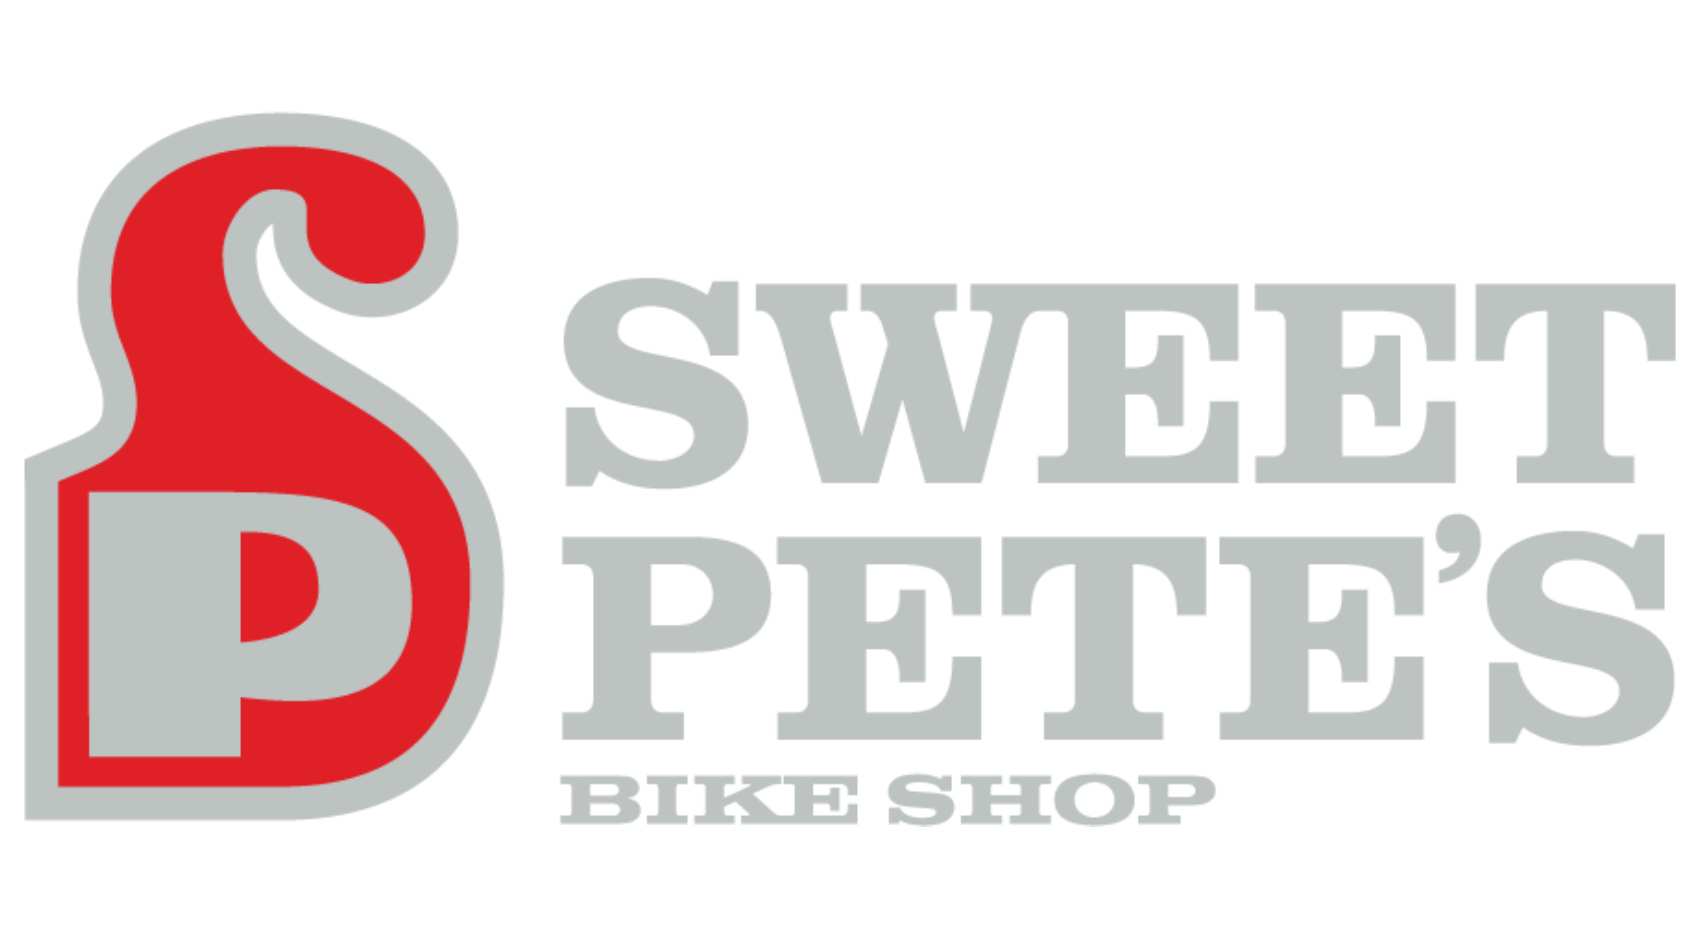 Sweet Pete's bike shop